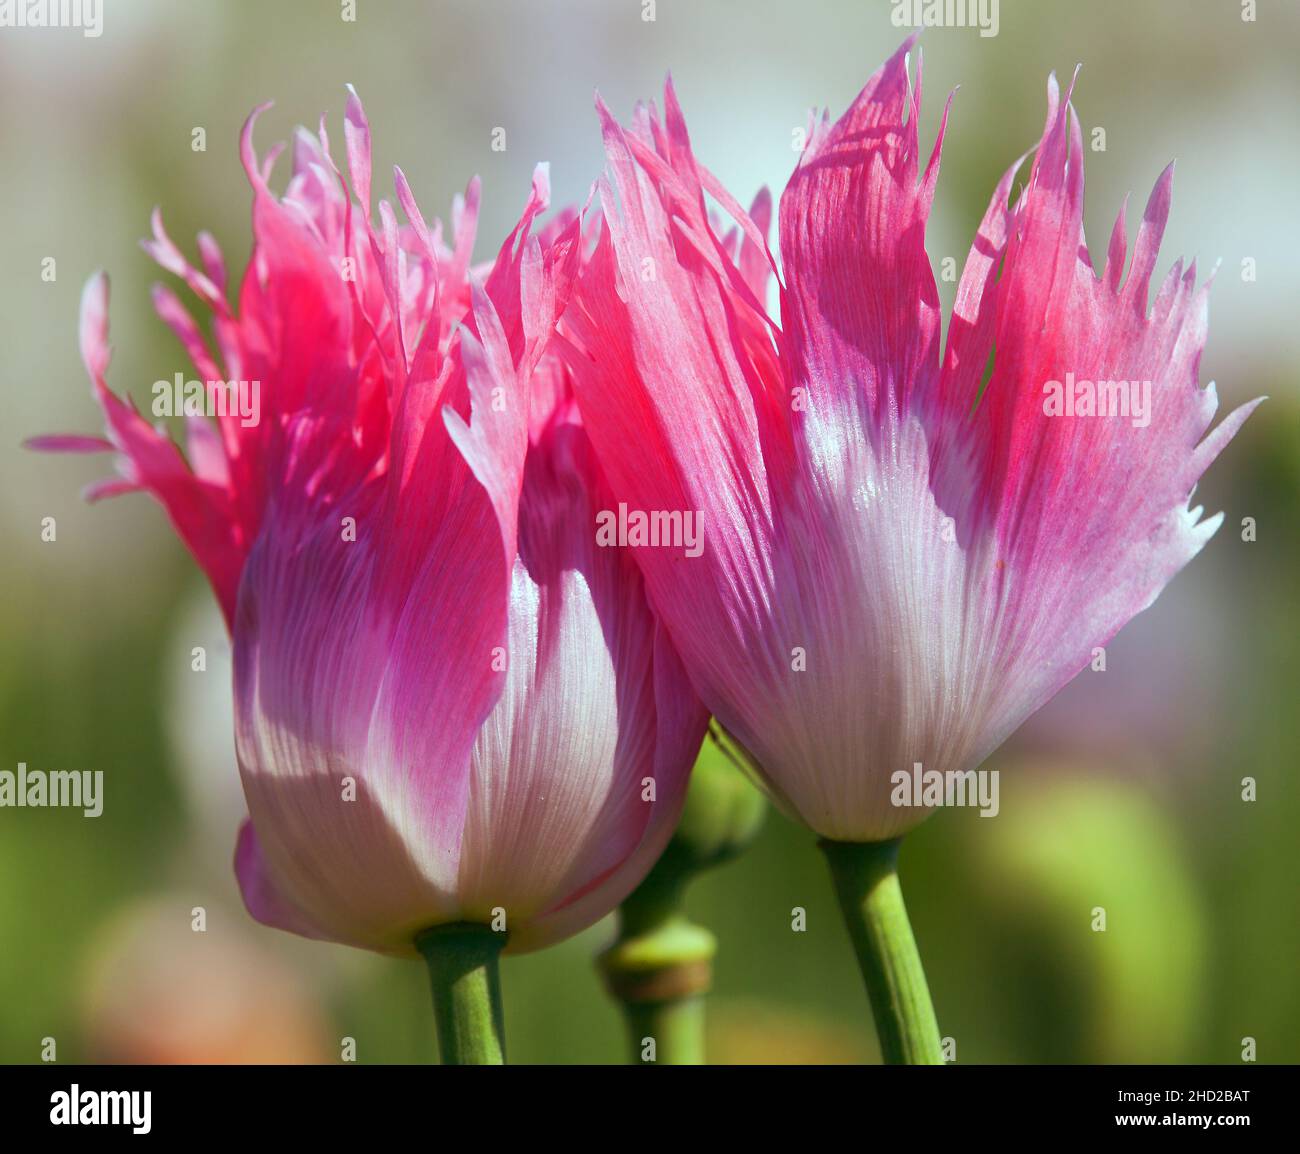 Detail der blühenden Mohnblume oder Opium Mohnblume in Latein papaver somniferum, Mohnfeld, rot oder rosa gefärbt Mohnblume wird in der Tschechischen Republik angebaut Stockfoto